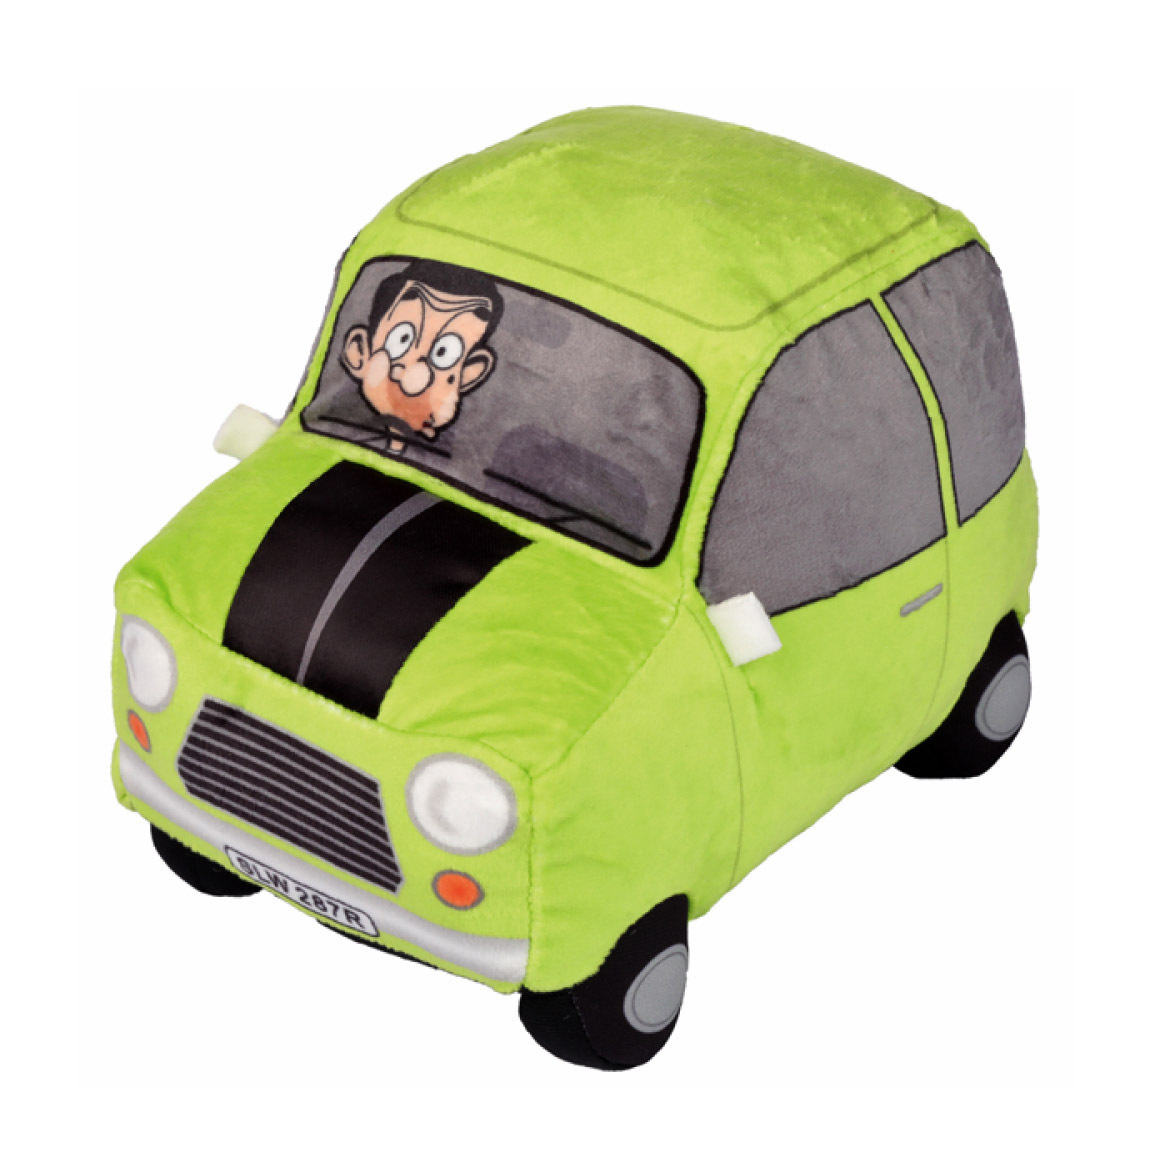 Mr Bean Plush Mini Car Plays Theme Song